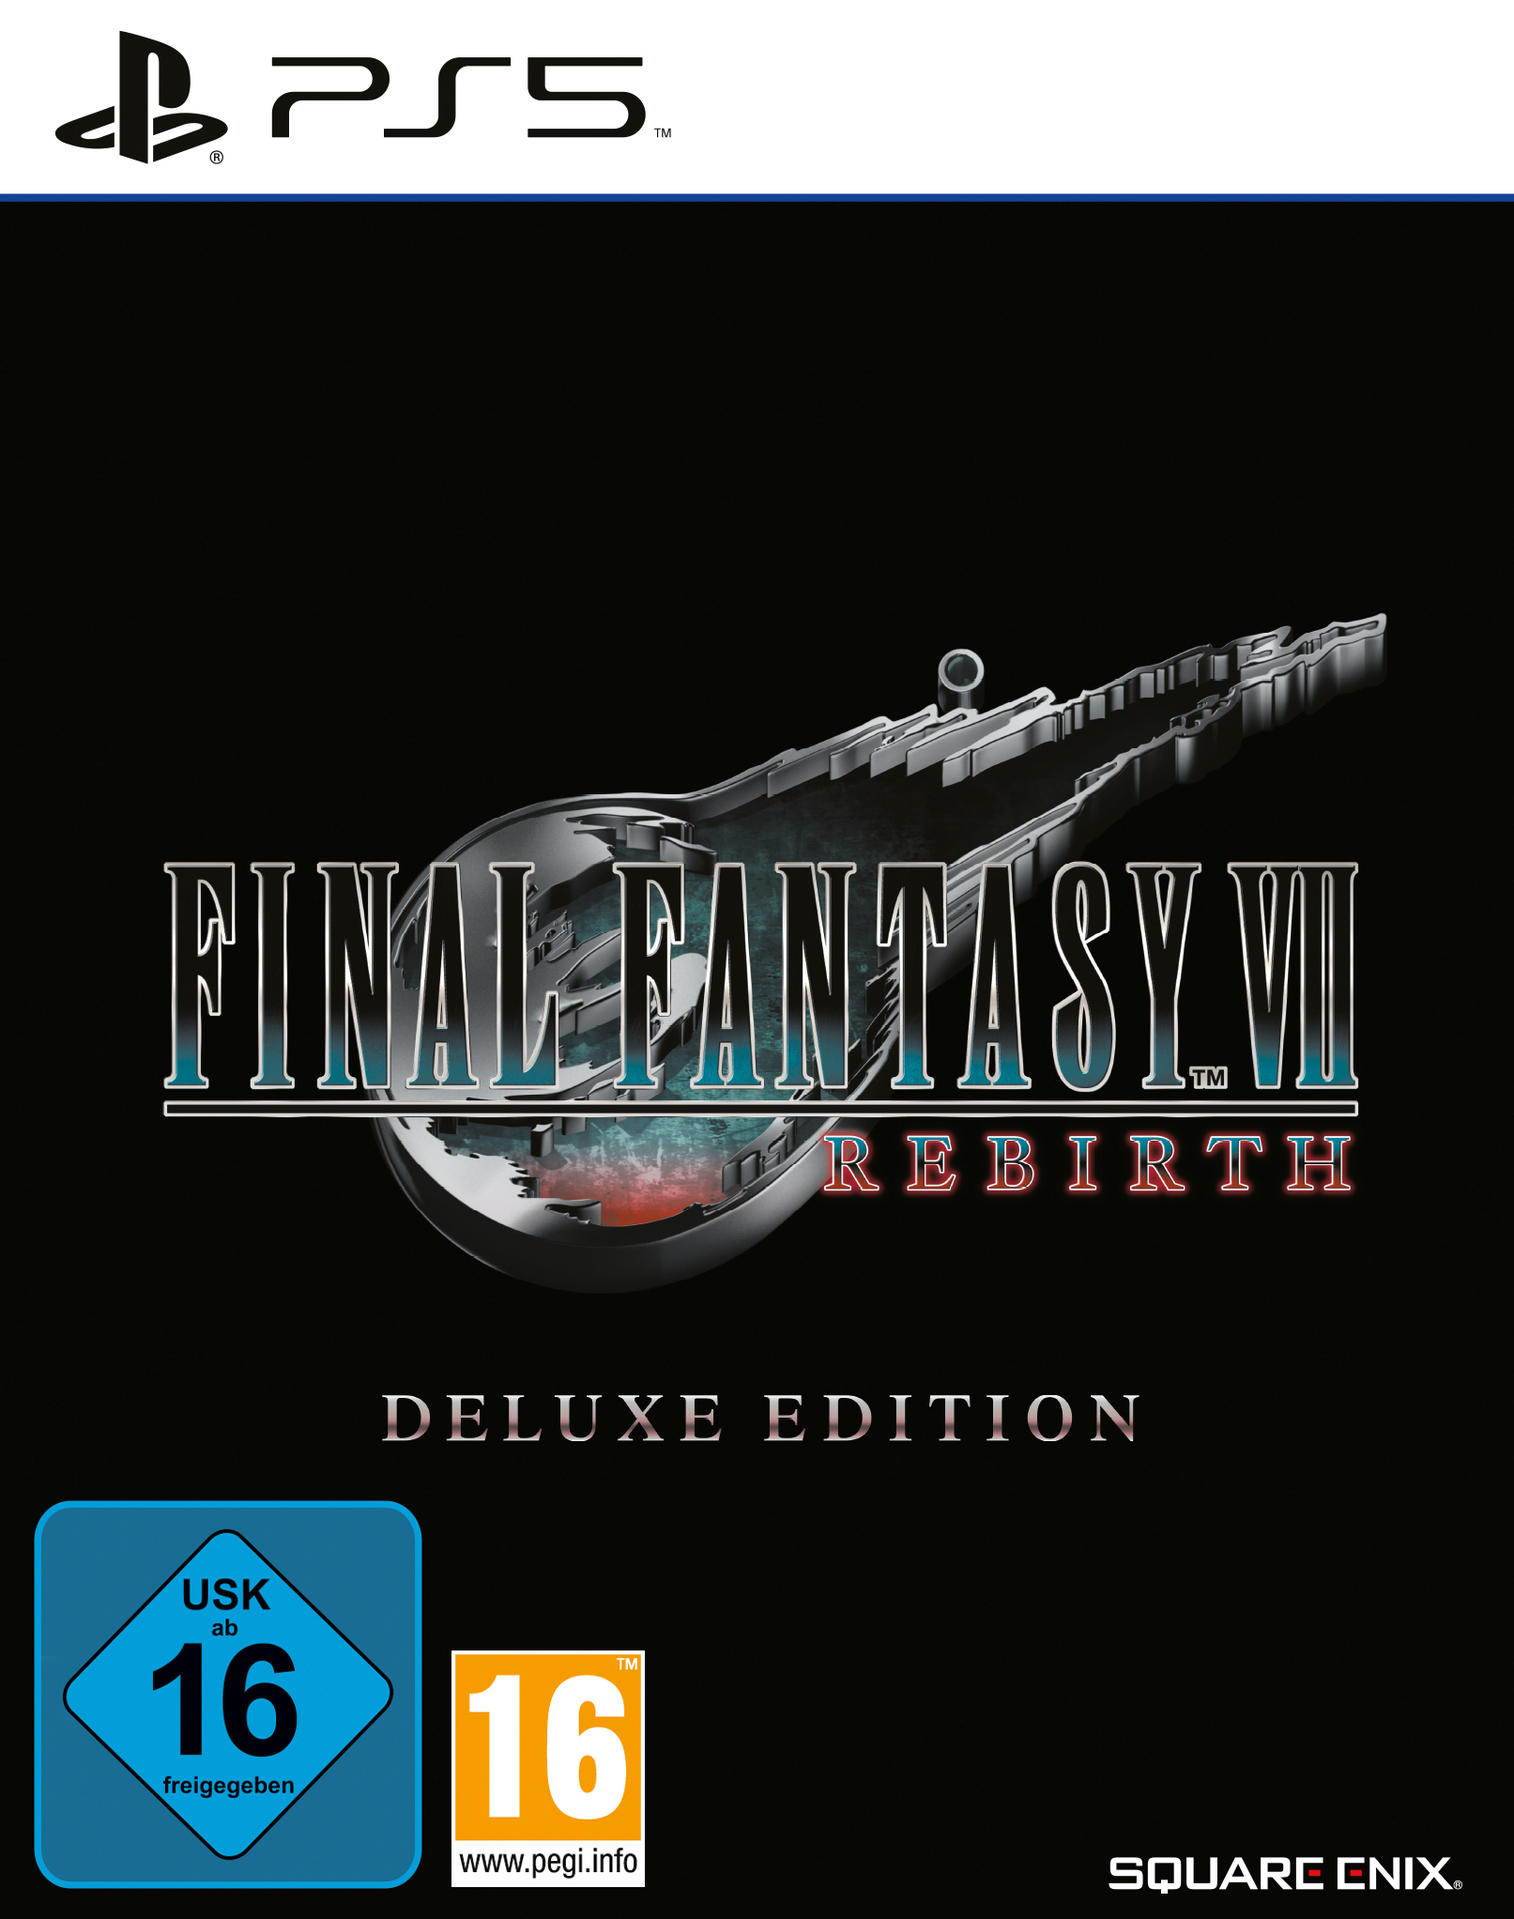 VII Deluxe 5] - Final Rebirth Edition Fantasy [PlayStation